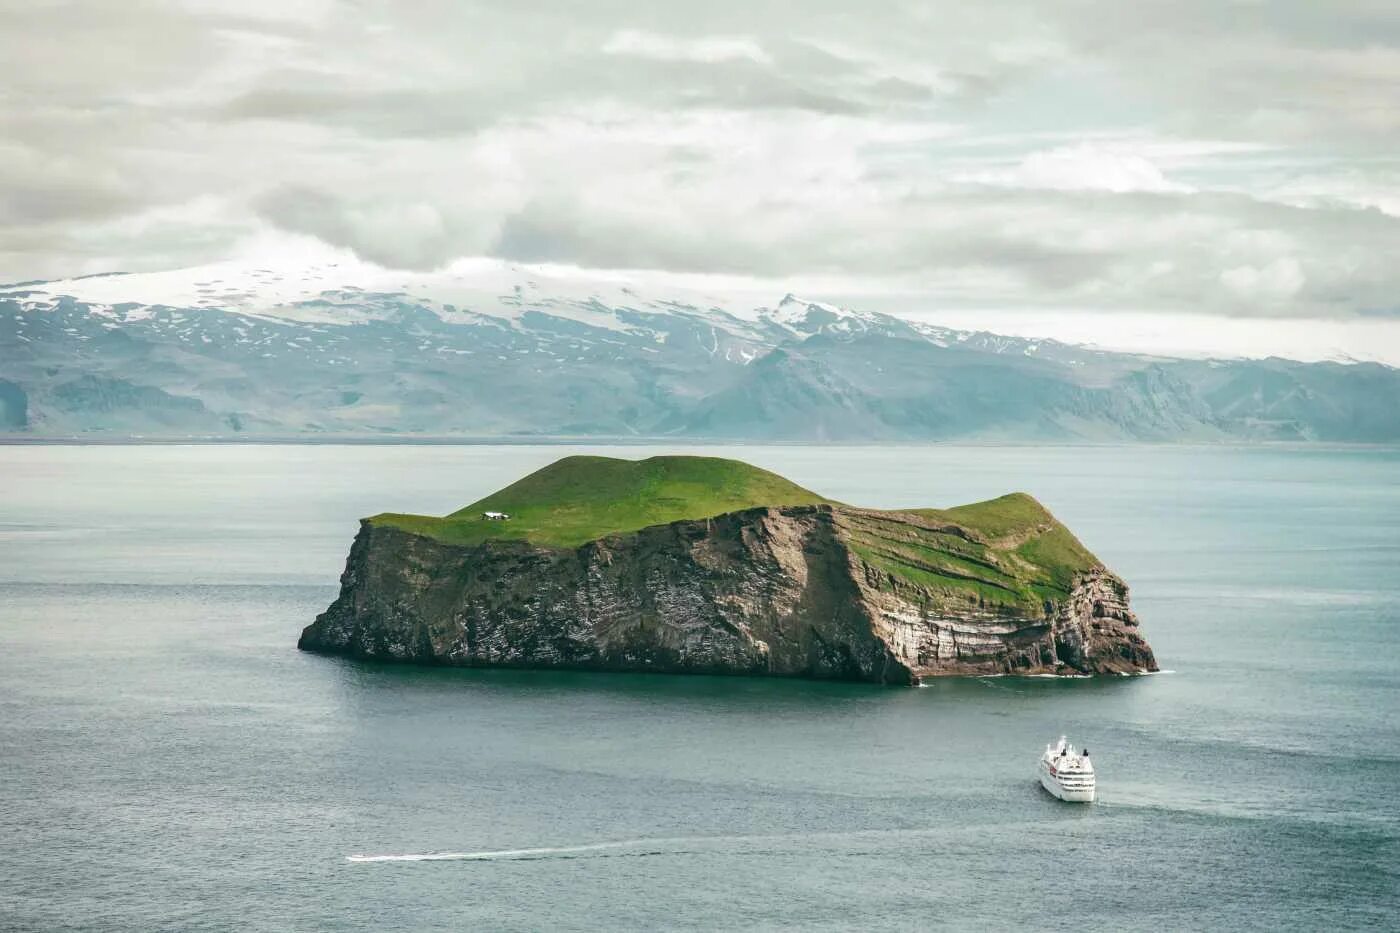 Remote island. Остров Эллидаэй Исландия. Остров Вестманнаэйяр Исландия. Вестманнаэйяр (Vestmannaeyjar), Исландия. Остров Эдлидаэй в Исландии.